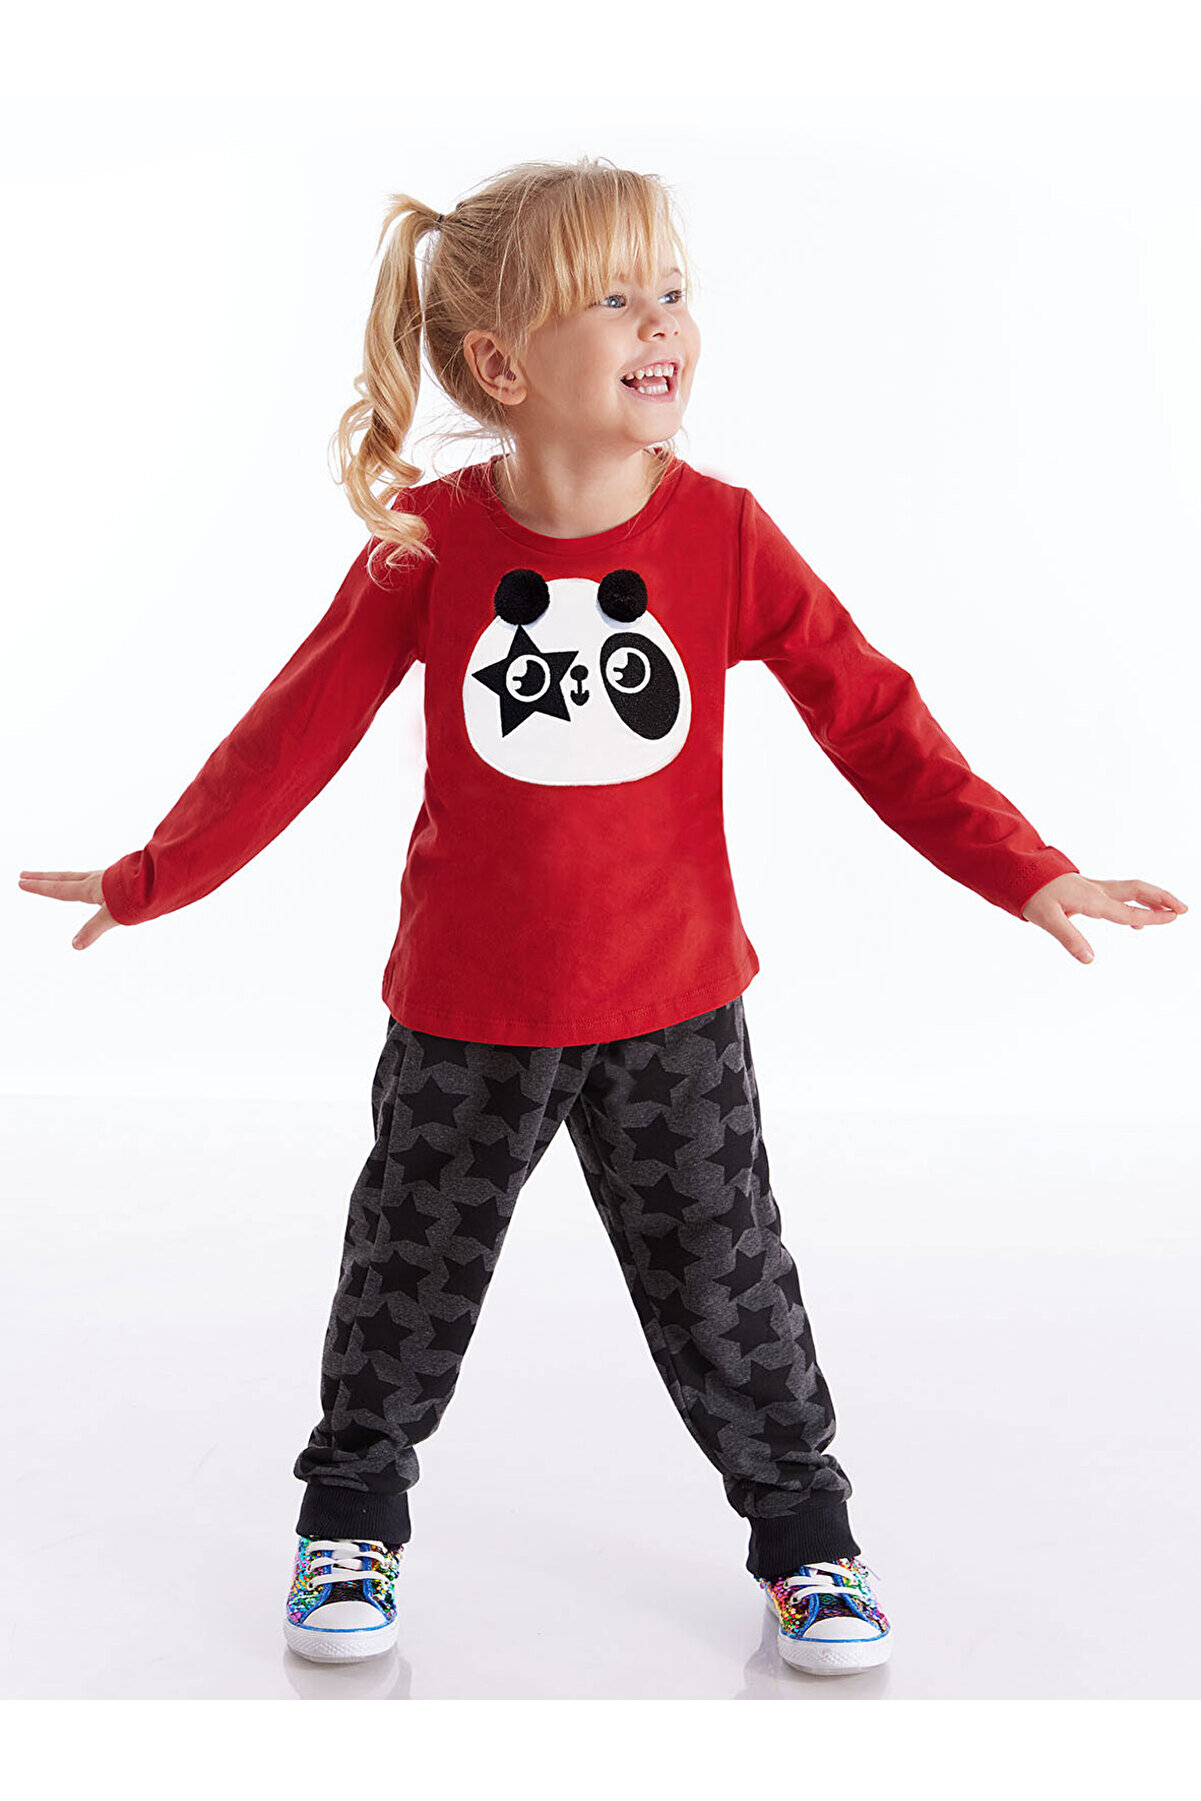 Denokids Ponponlu Panda Kız Çocuk T-shirt Pantolon Takım